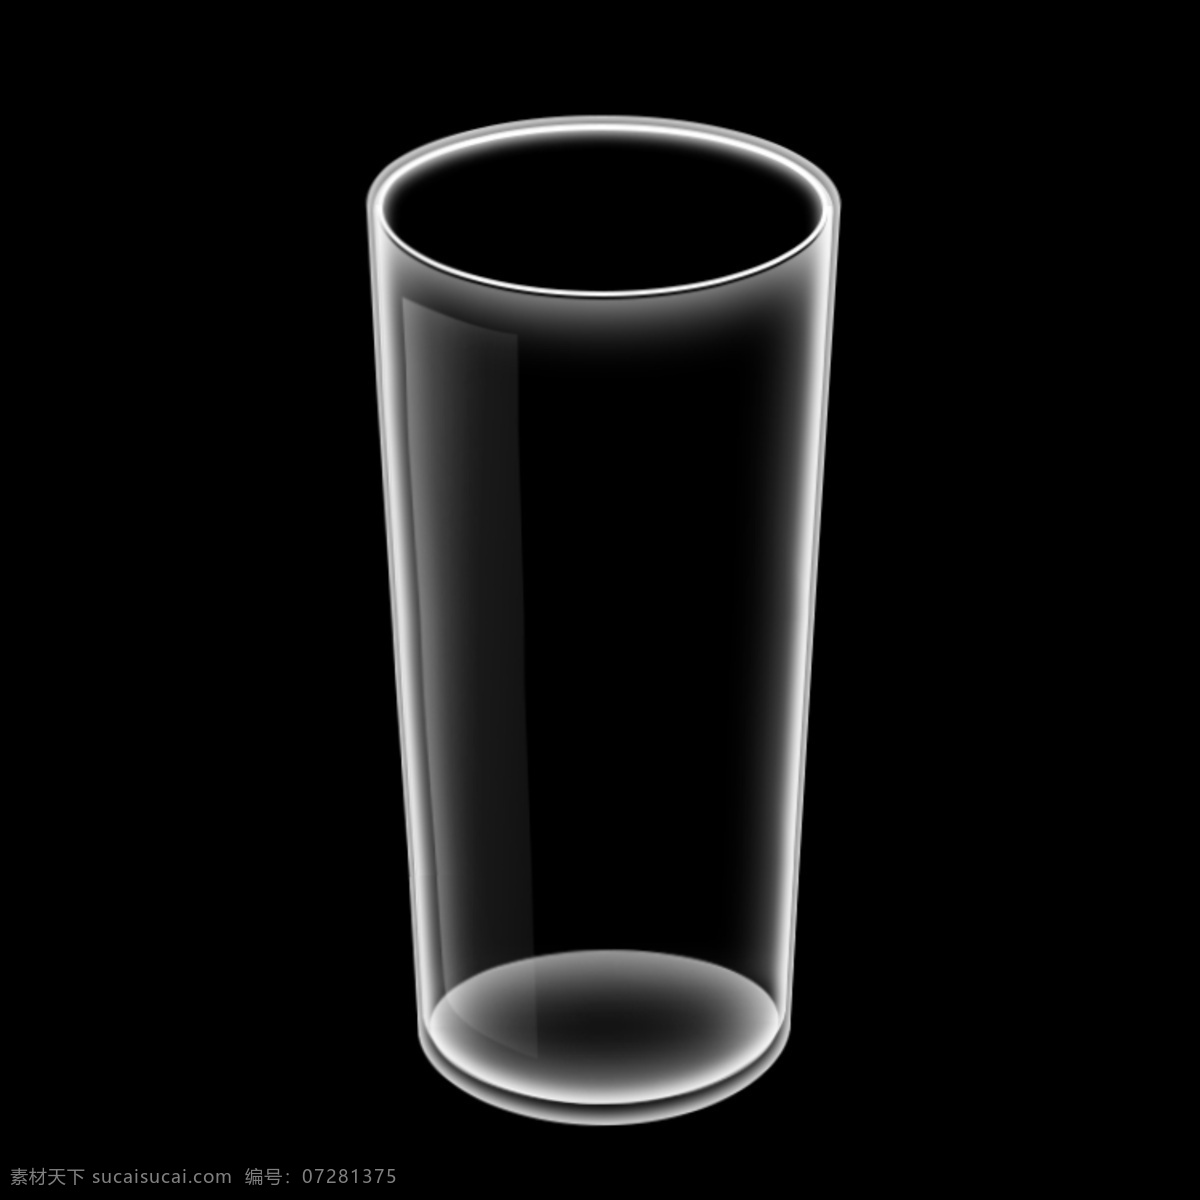 高清水杯 玻璃杯 透明杯子素材 玻璃杯素材 psd素材 ps水杯 ps玻璃杯 分层